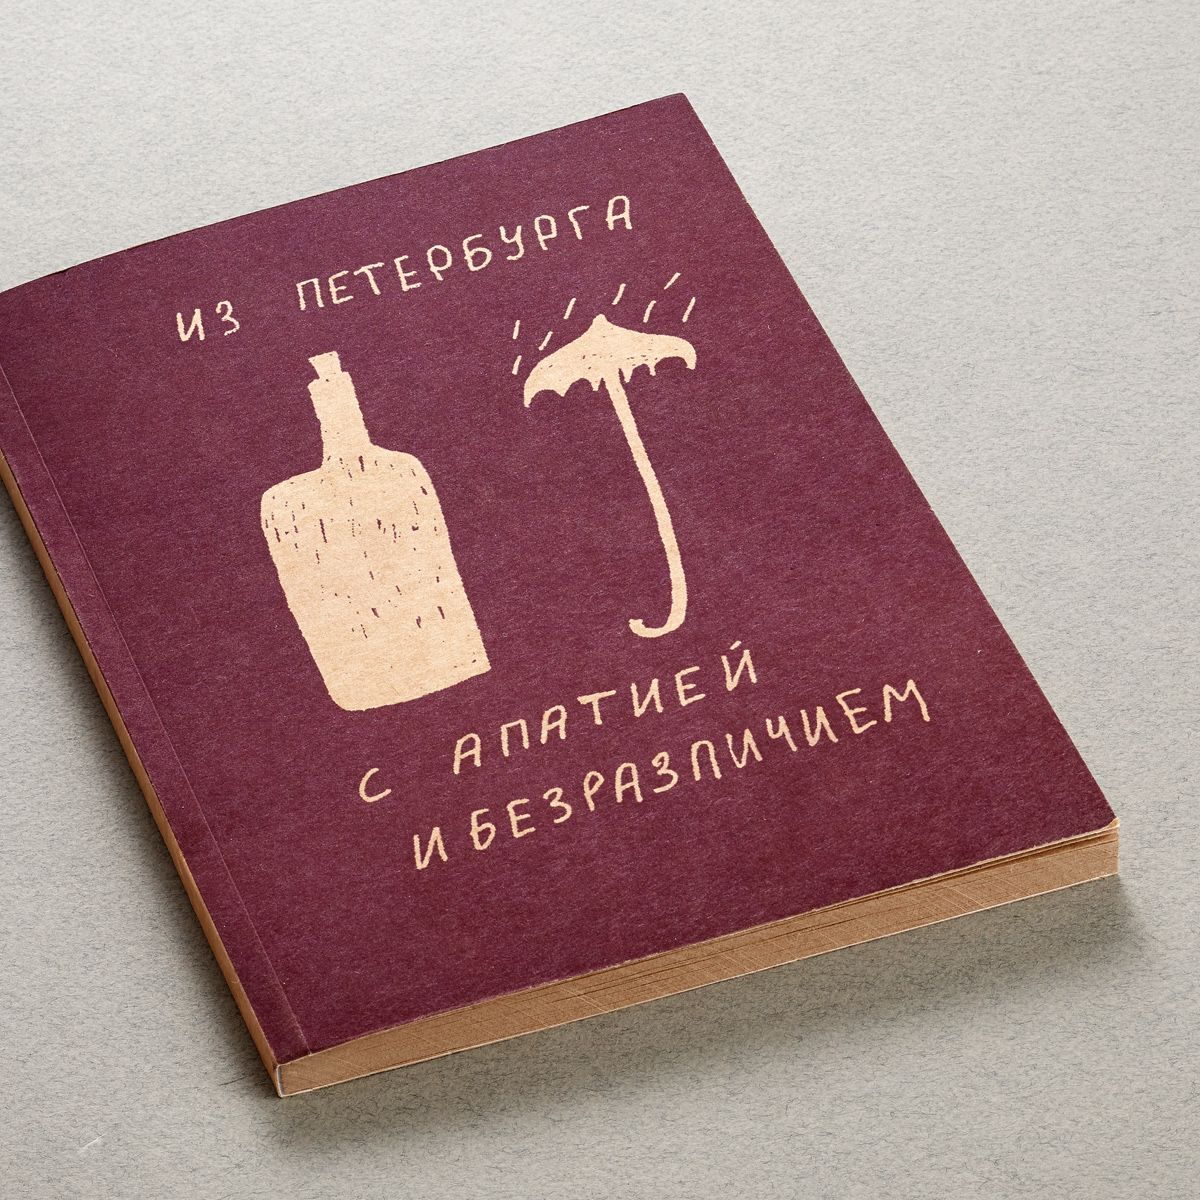 Блокнот А5 «Из Петербурга с апатией и безразличием» конверт из петербурга с апатией